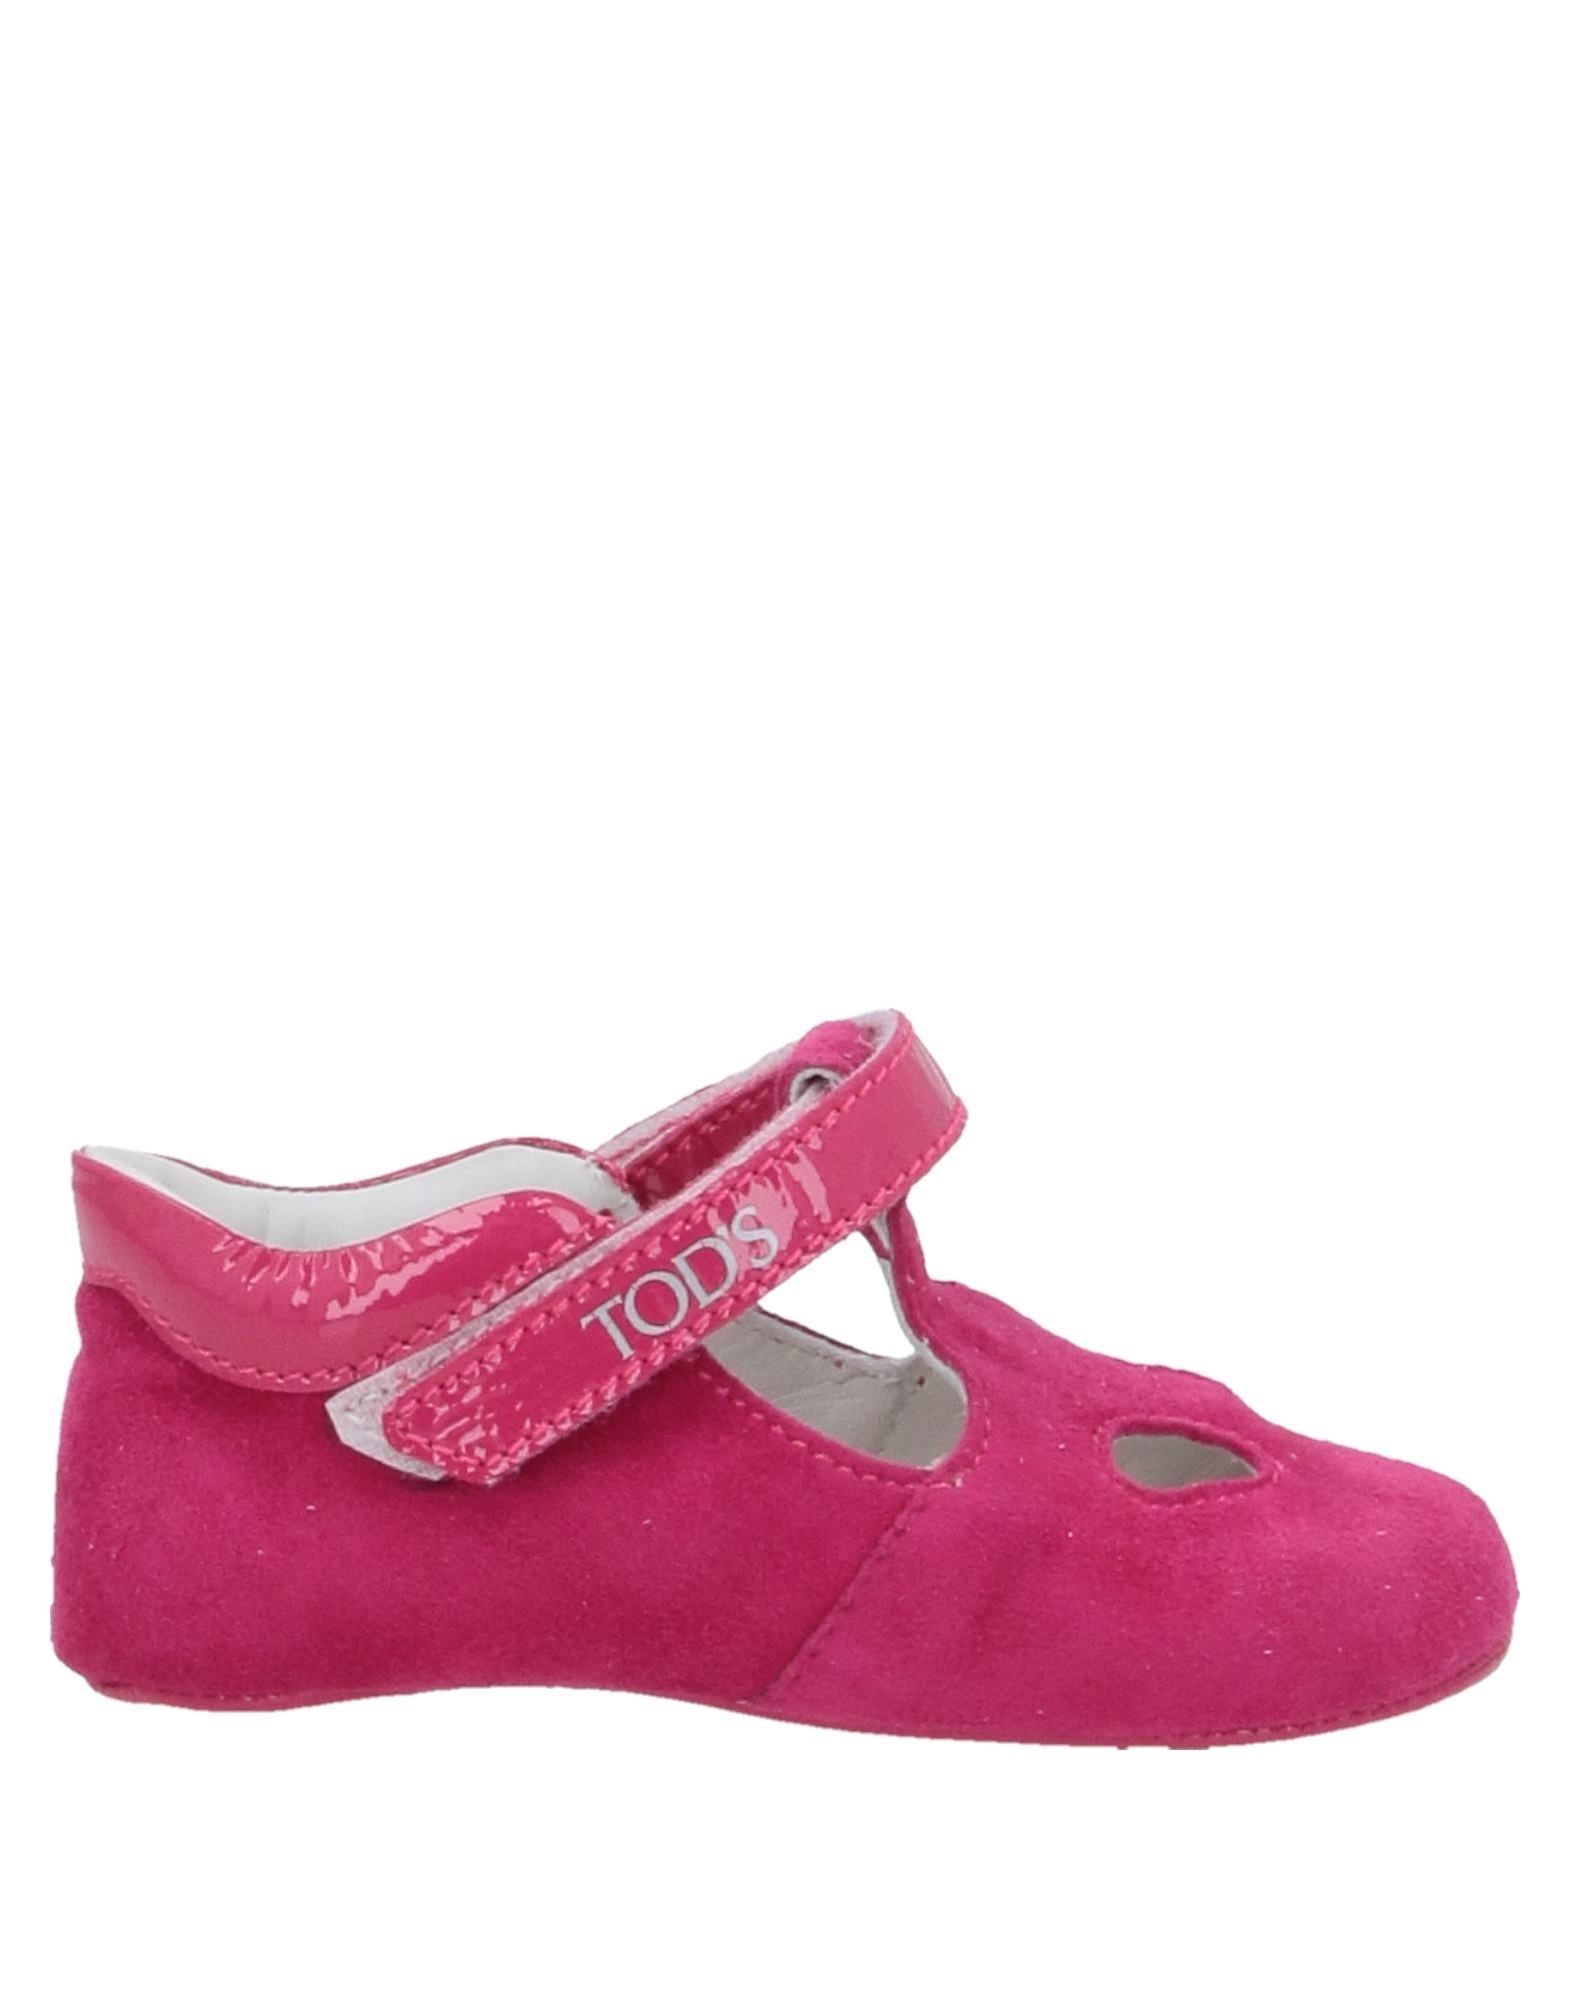 TOD'S Schuhe Für Neugeborene Kinder Purpur von TOD'S